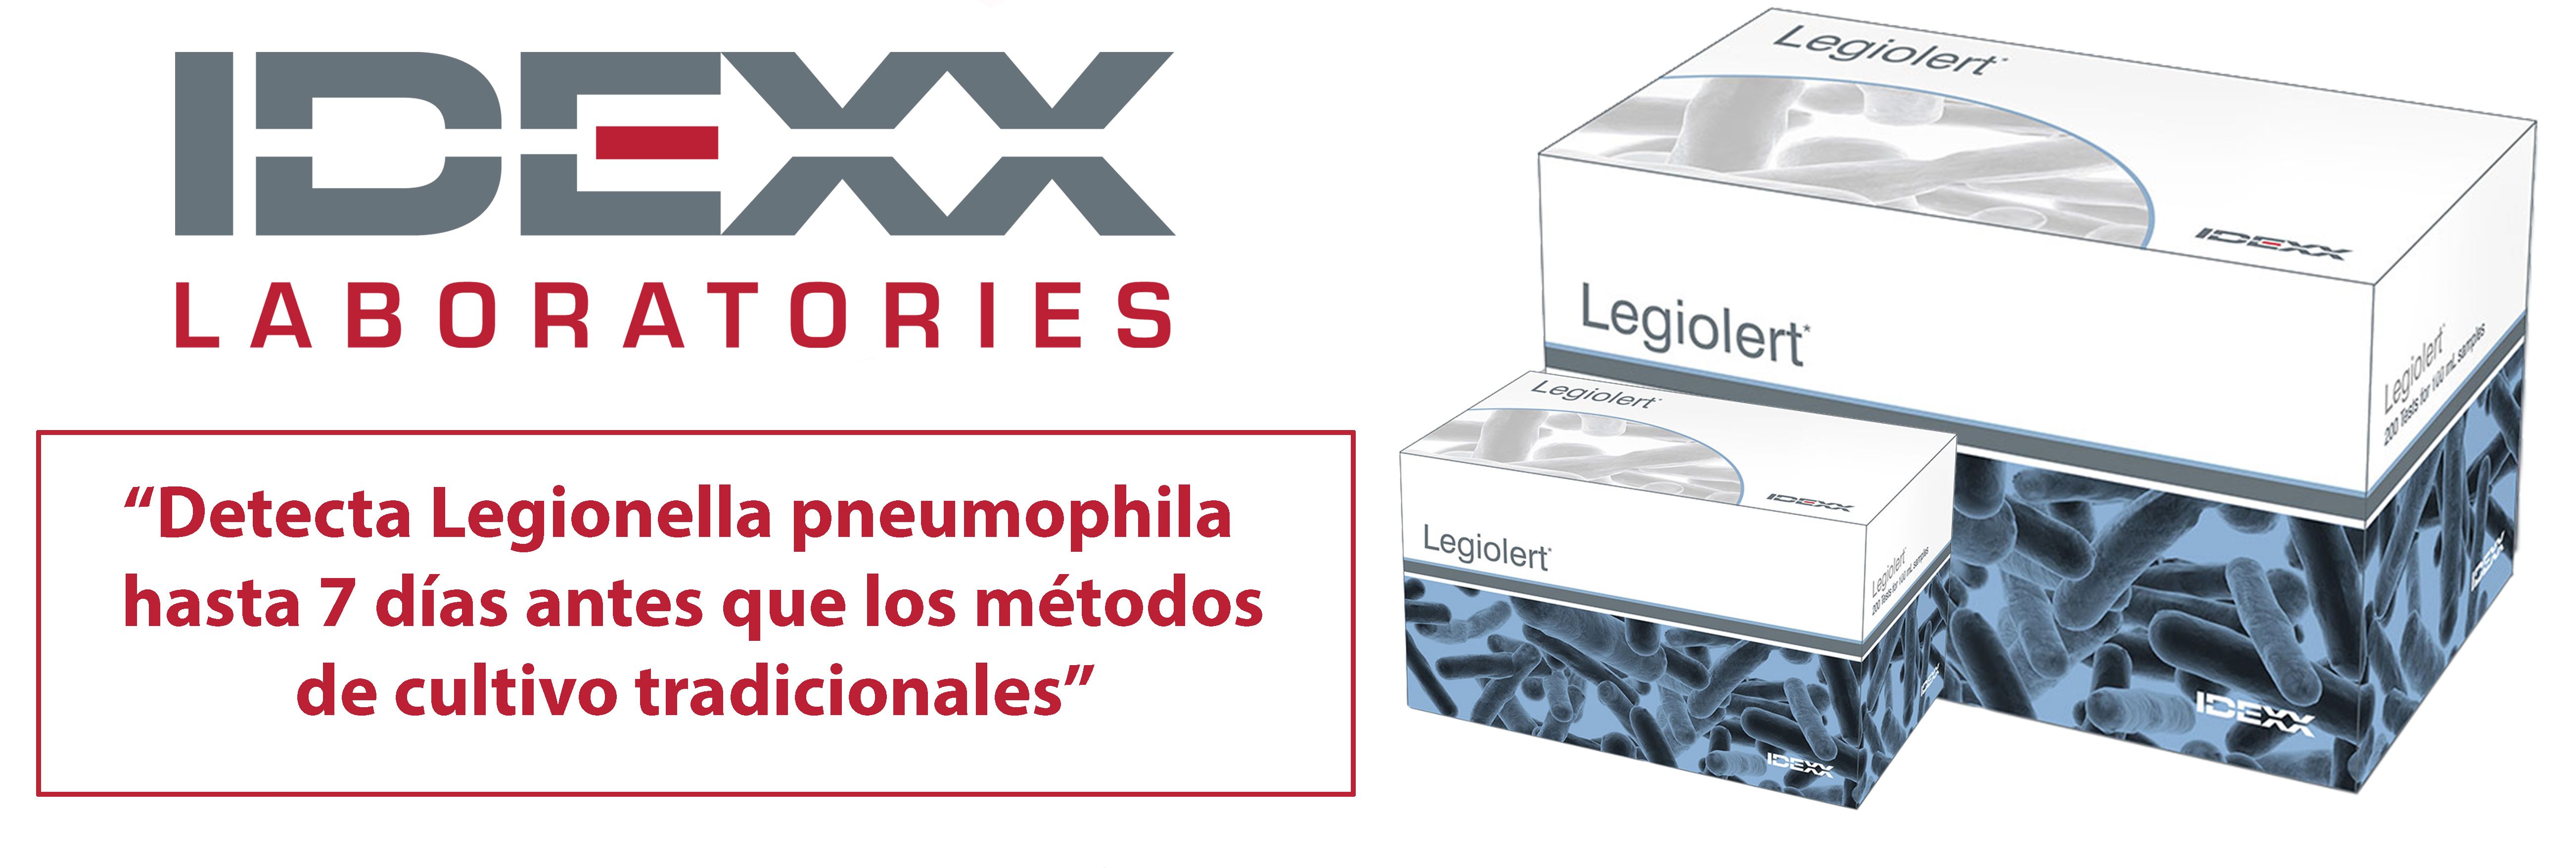 Legiolert: Detecta Legionella pneumophila hasta 7 días antes que los métodos de cultivo tradicionales